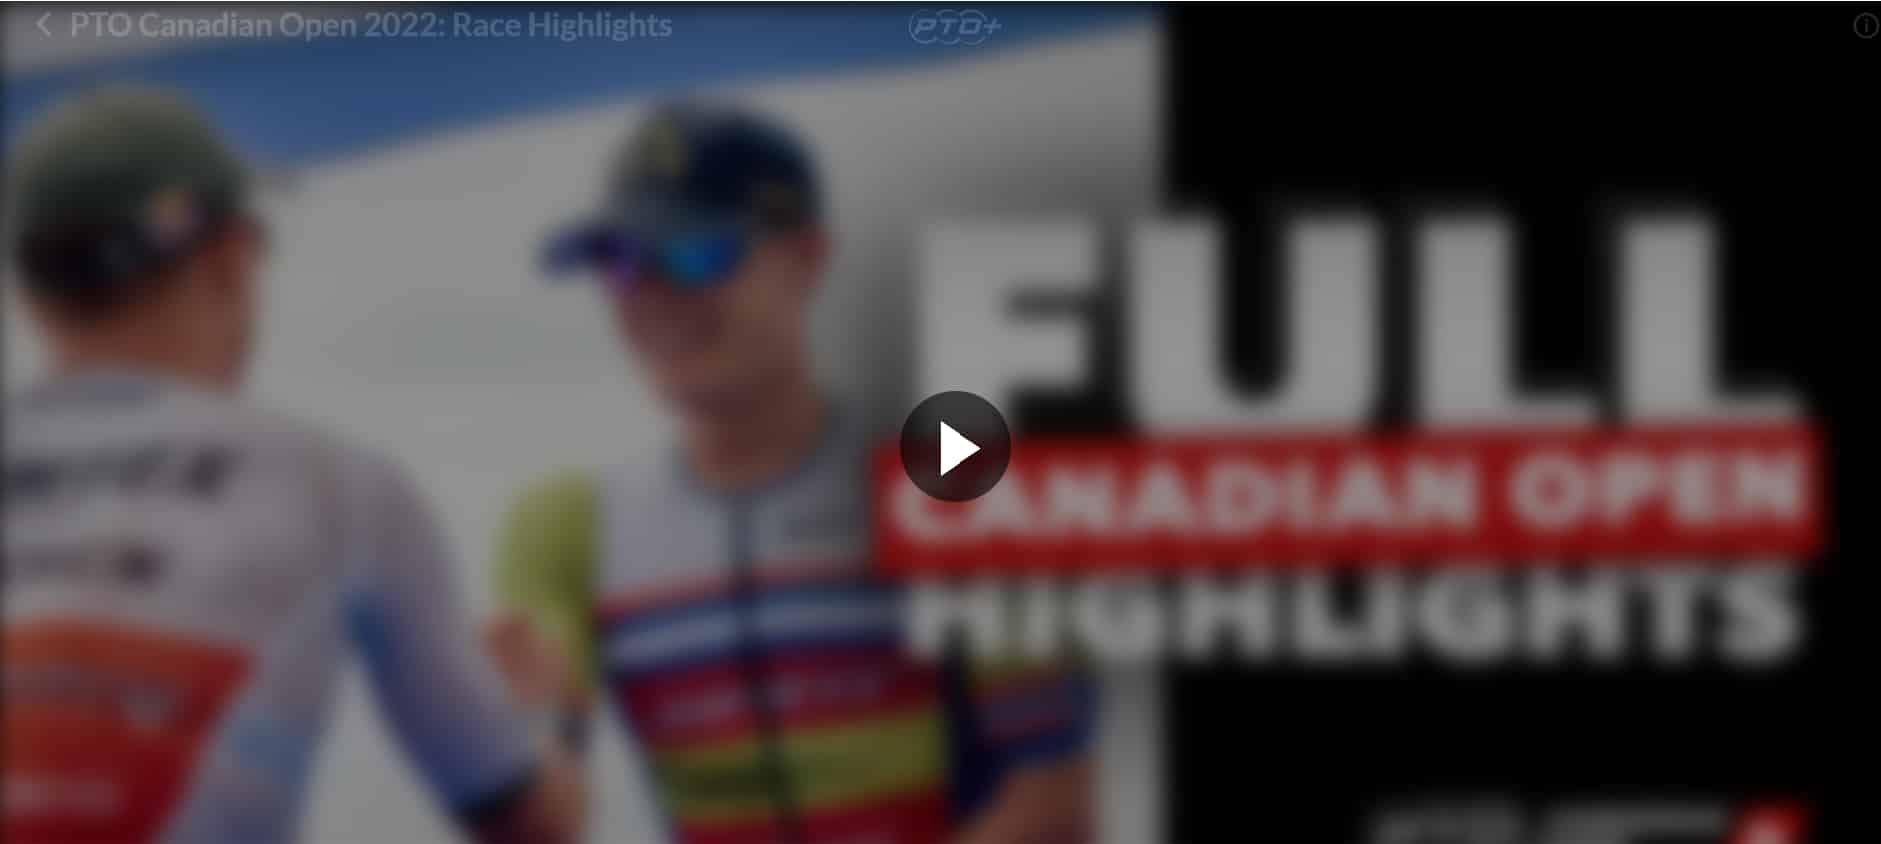 Captura del Video del Canadian Open